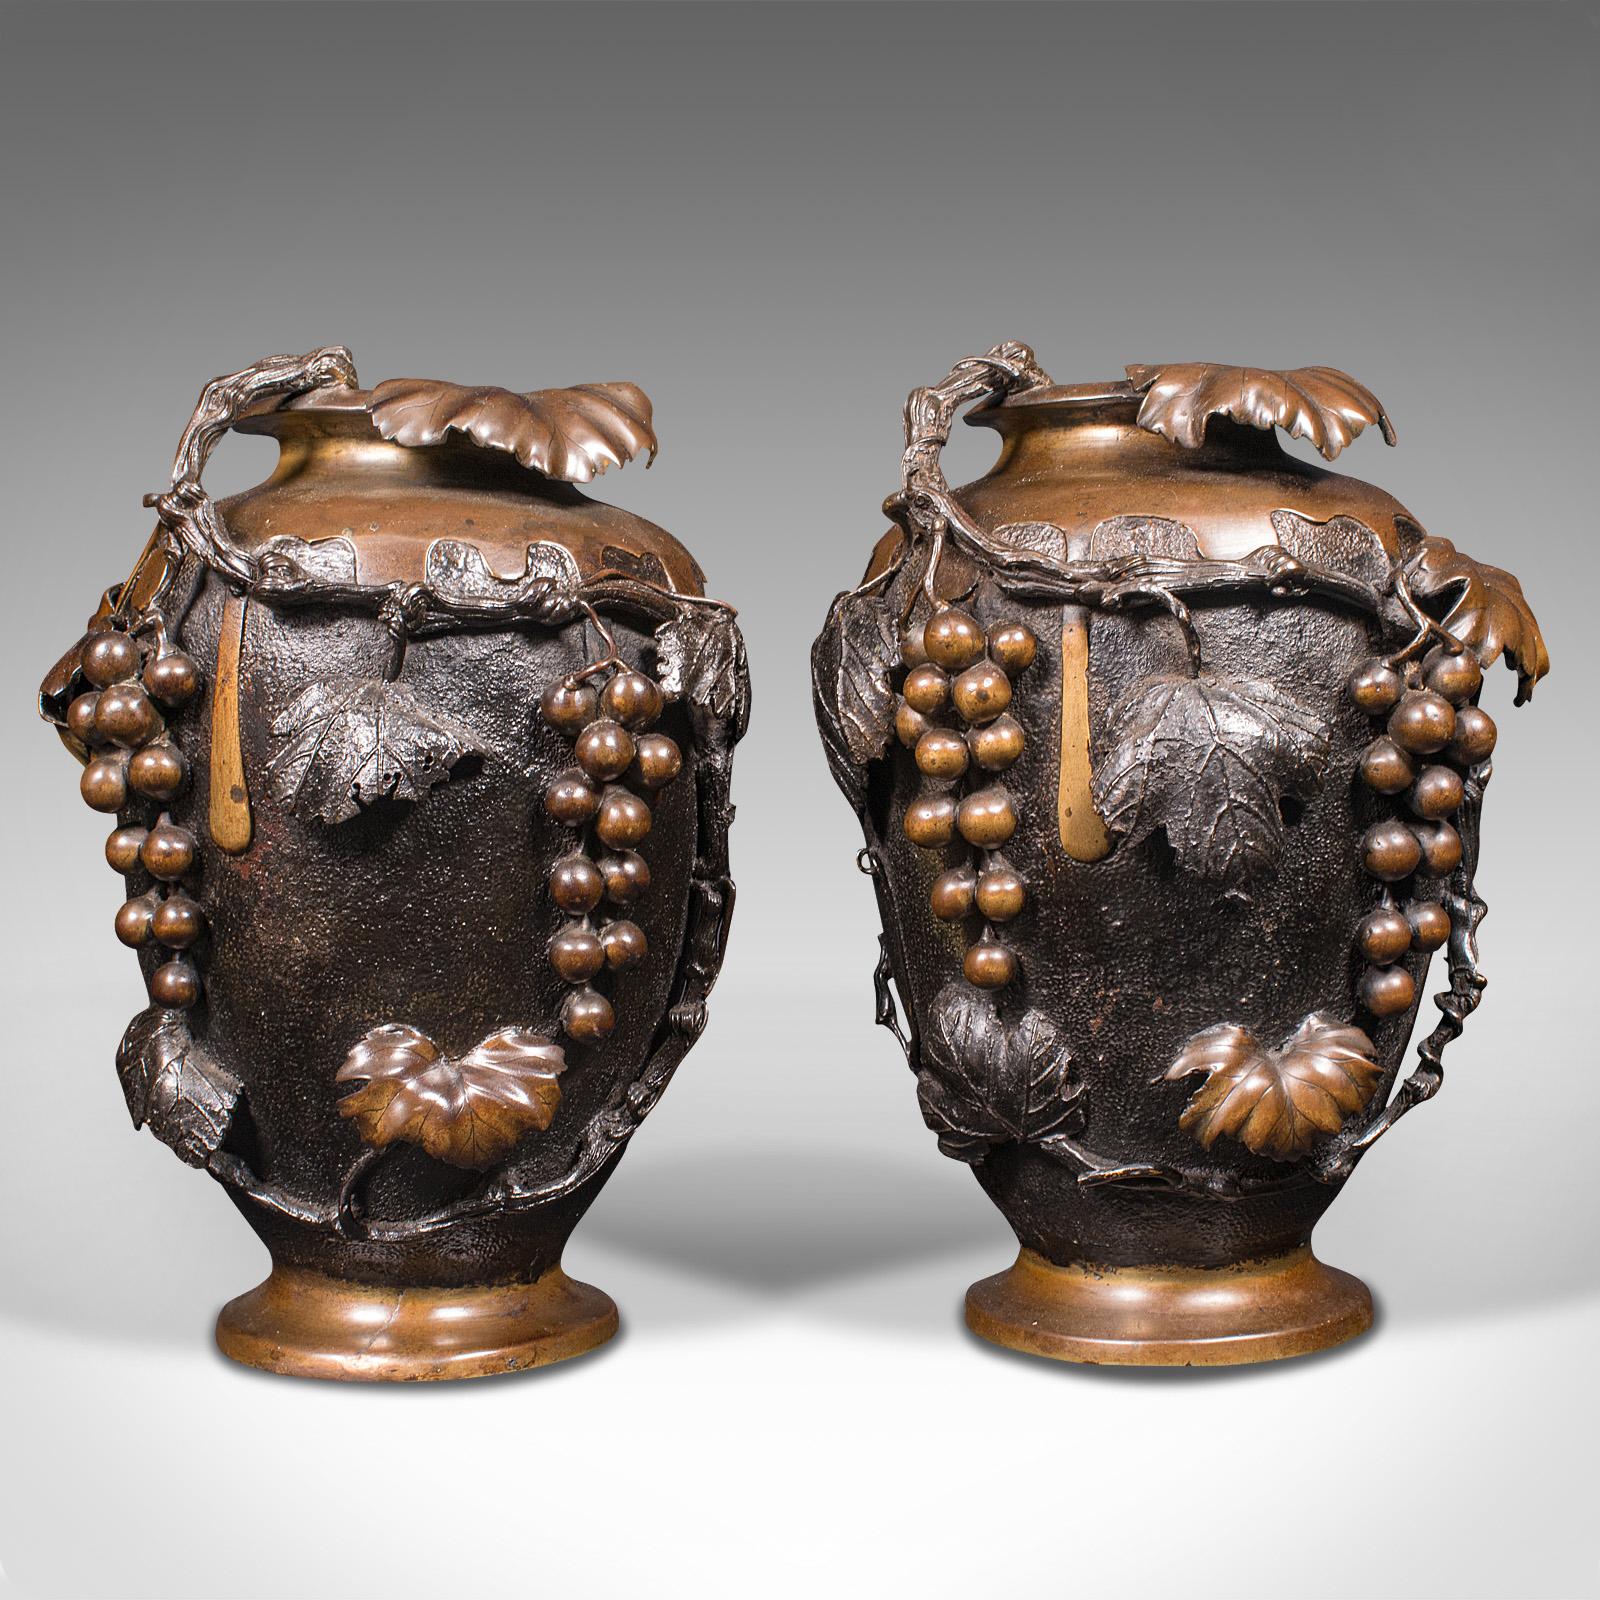 Il s'agit d'une grande paire de vases décoratifs anciens. Amphore ou urne japonaise en bronze, datant de la fin de la période victorienne, vers 1900.

Vases de grande taille, sculptés et finis de manière saisissante
Présente une patine d'usage